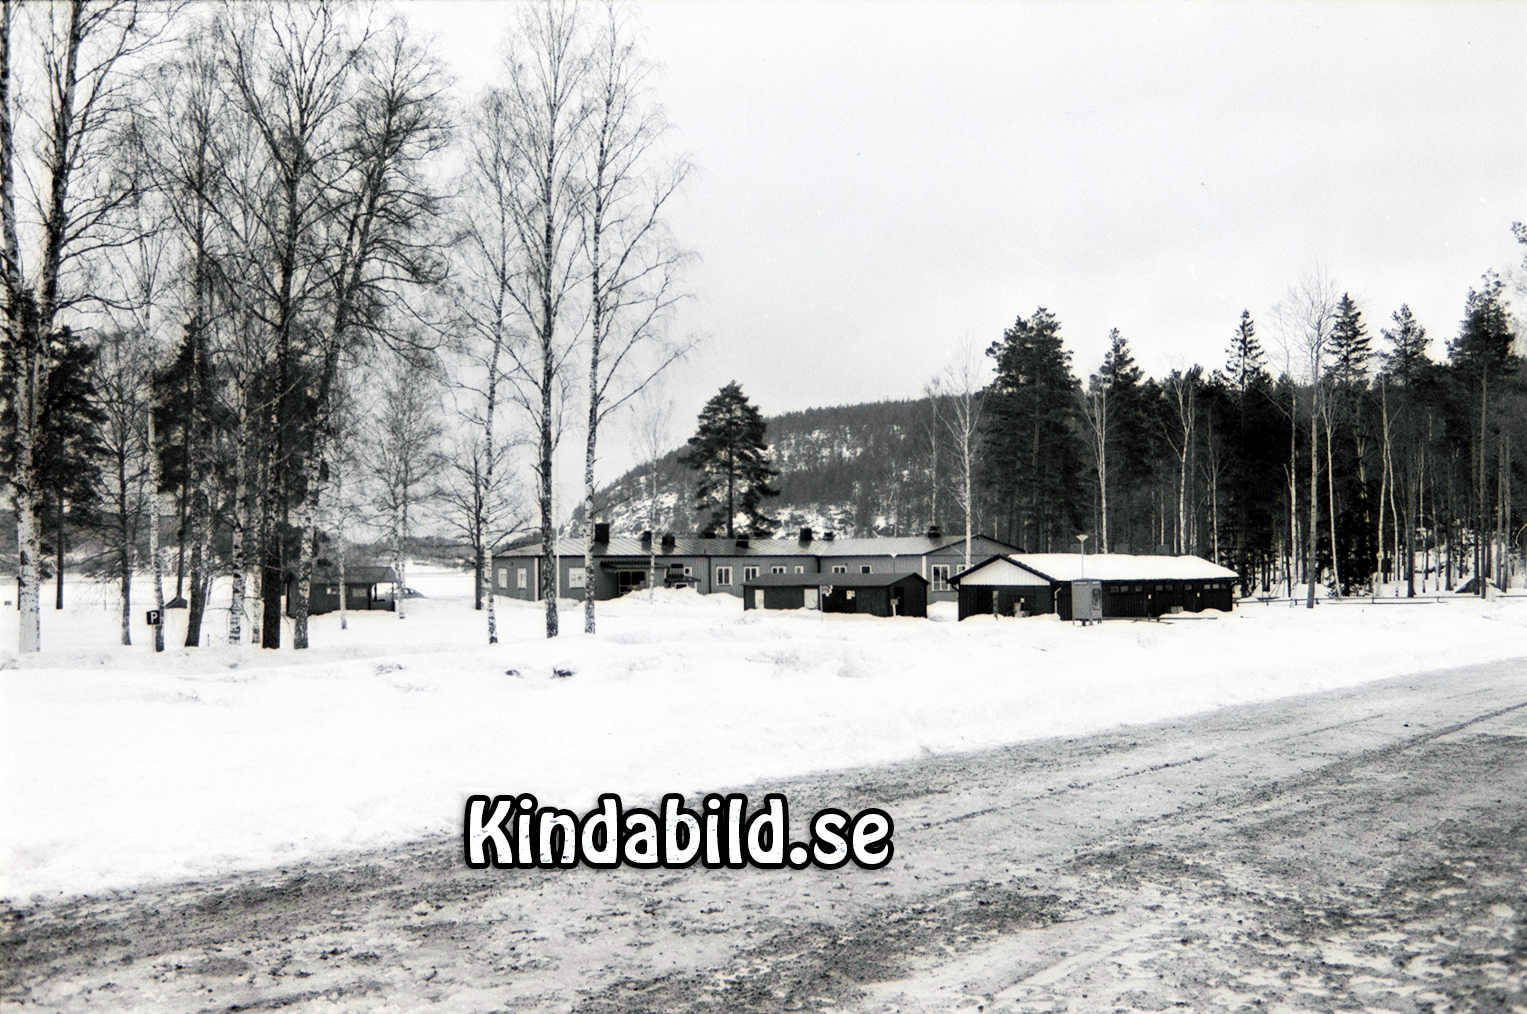 Stiftelsen Fritid Kisa
raja
Vinterbilder från Pinnarp Kisa  

